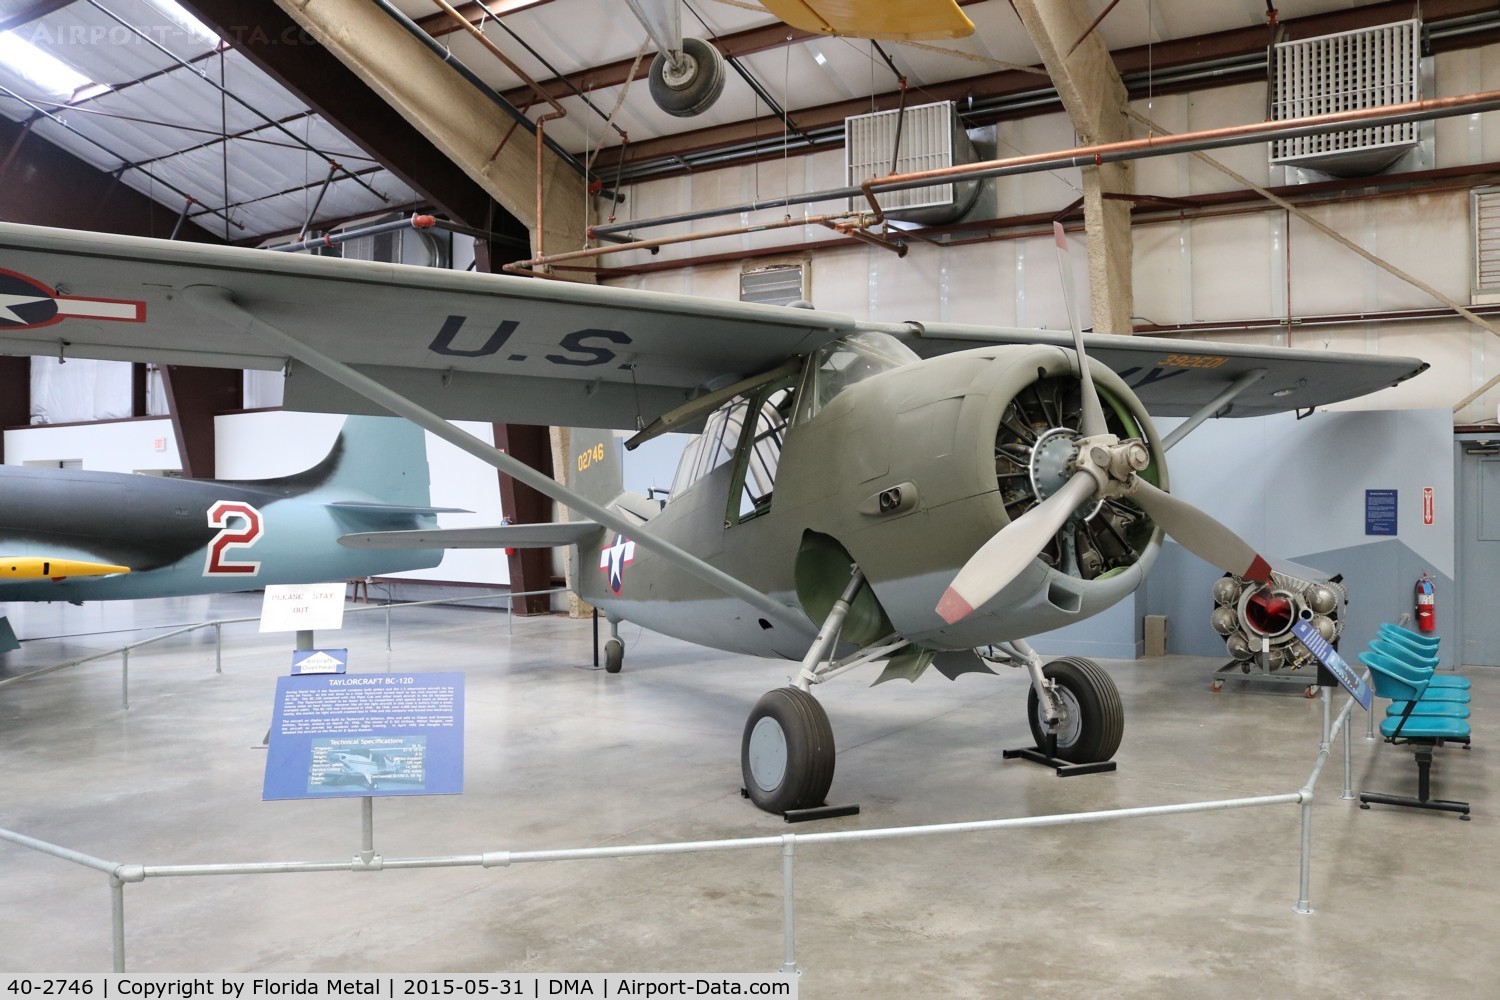 40-2746, 1940 Curtiss-Wright O-52 Owl C/N 14279, O-52 Owl